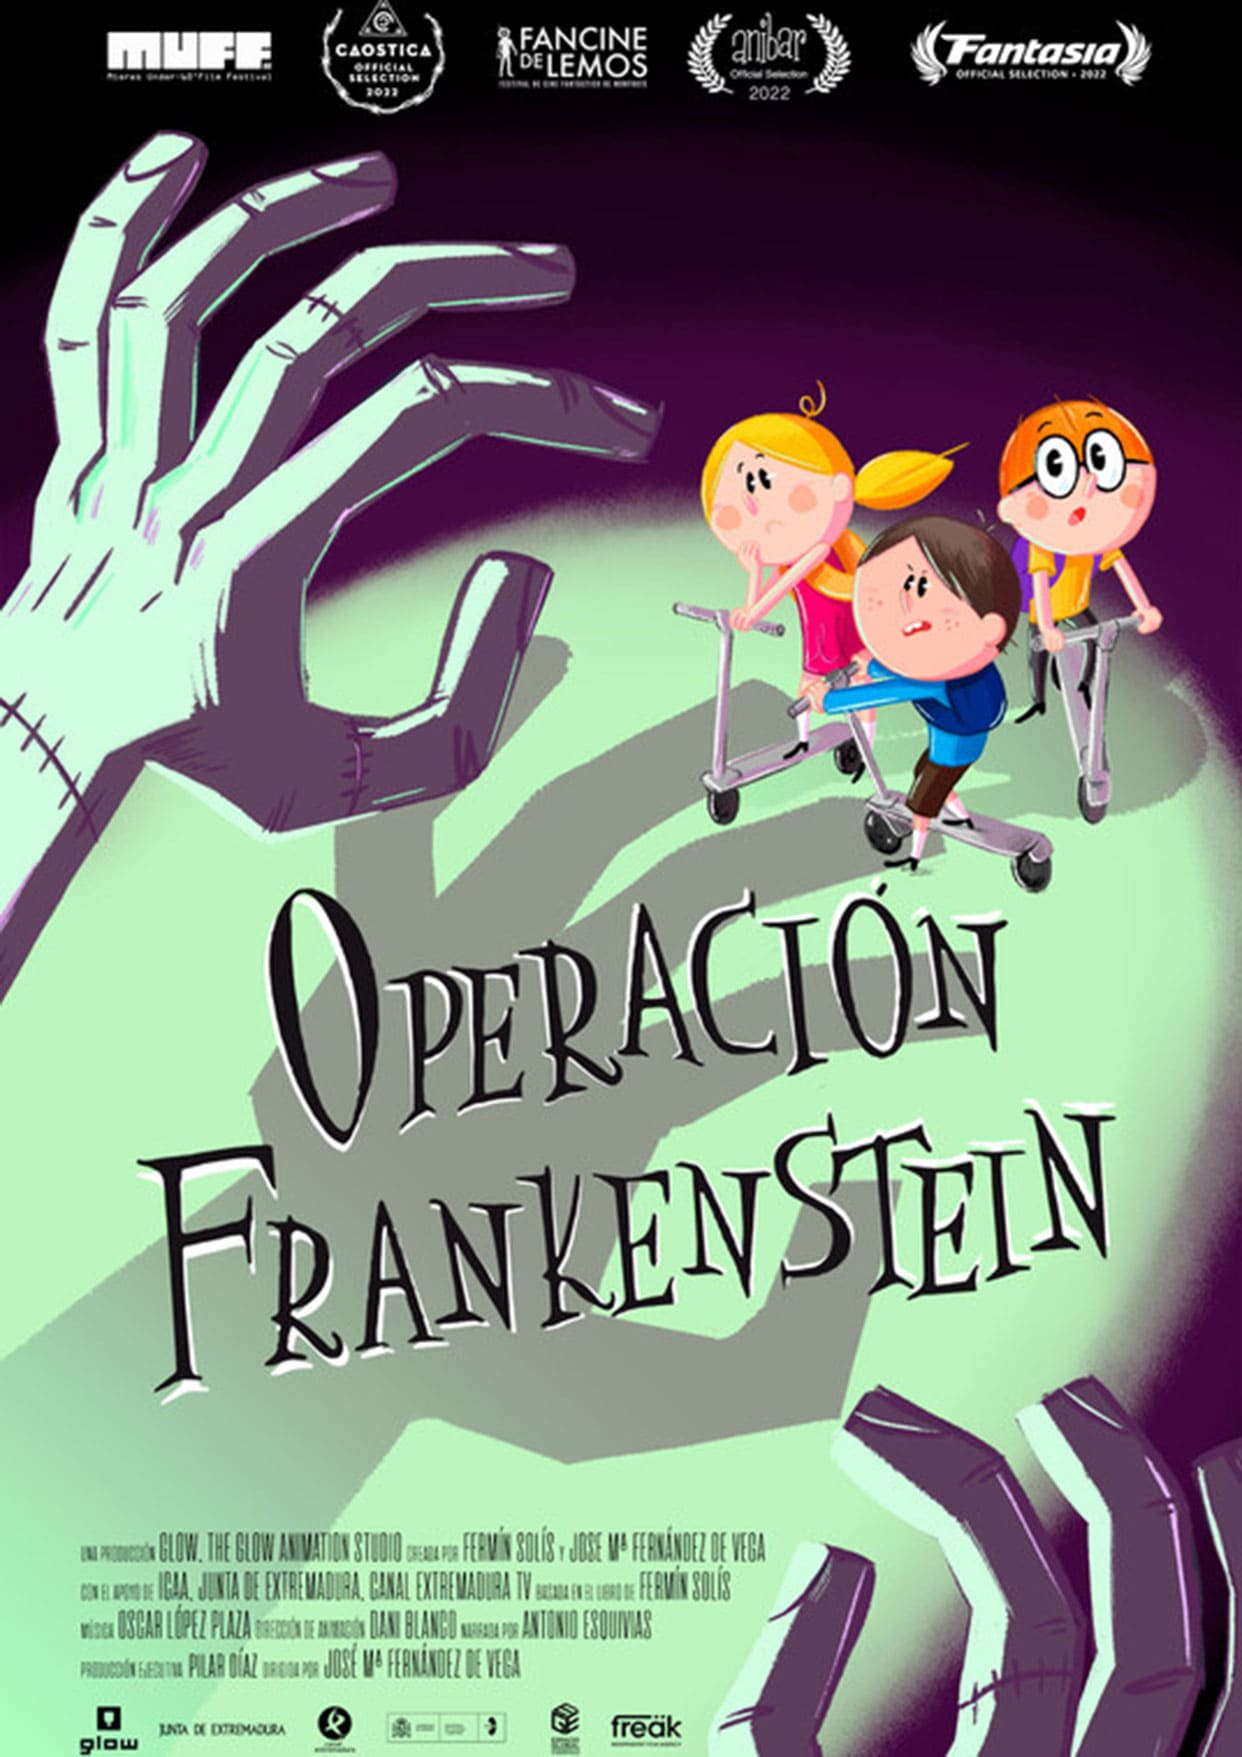 Operation Frankenstein